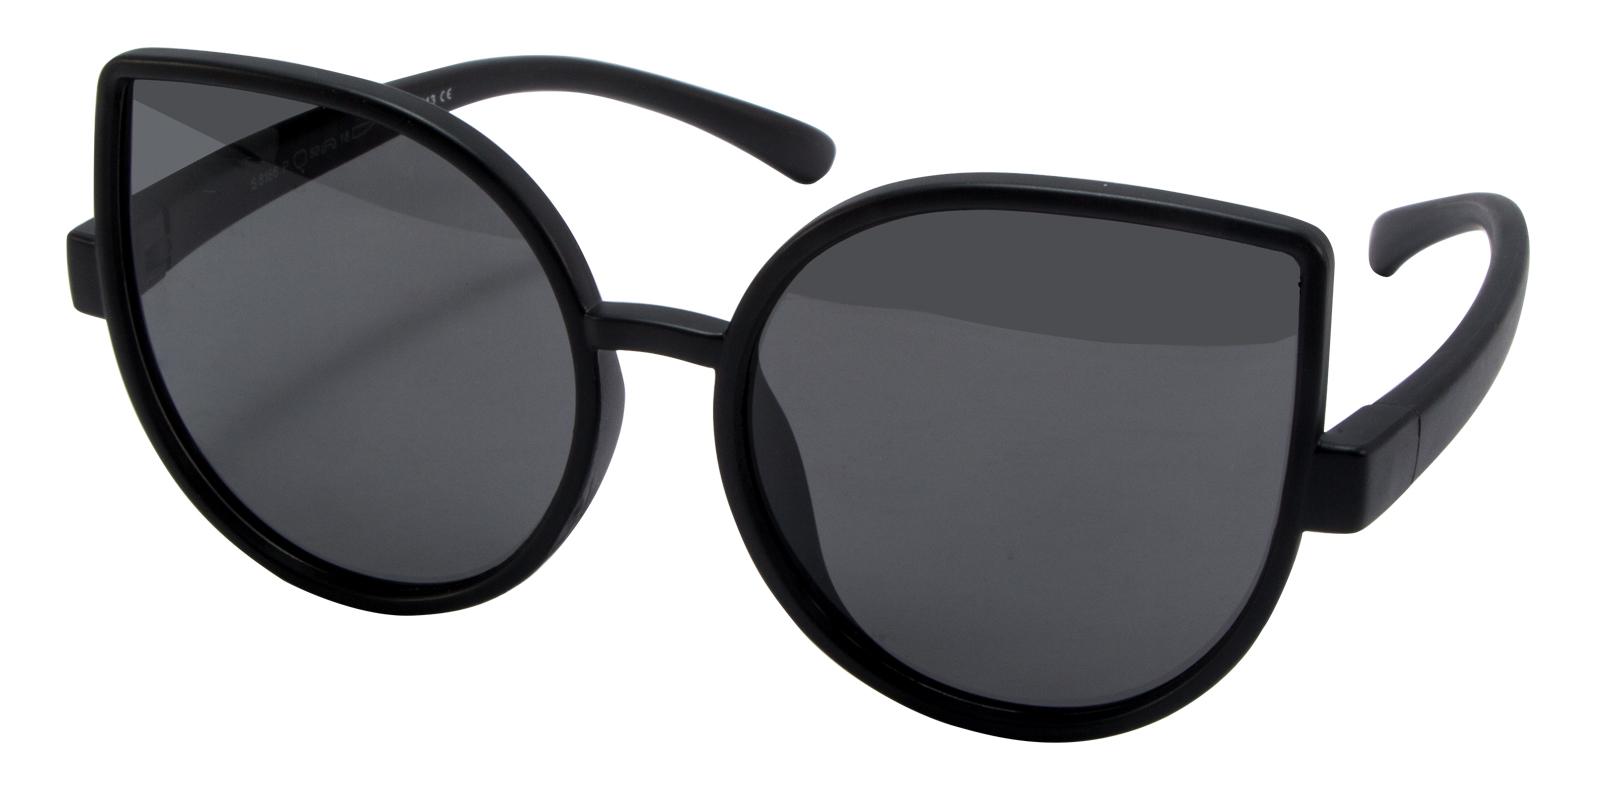 Nereid Black TR Sunglasses Frames from ABBE Glasses